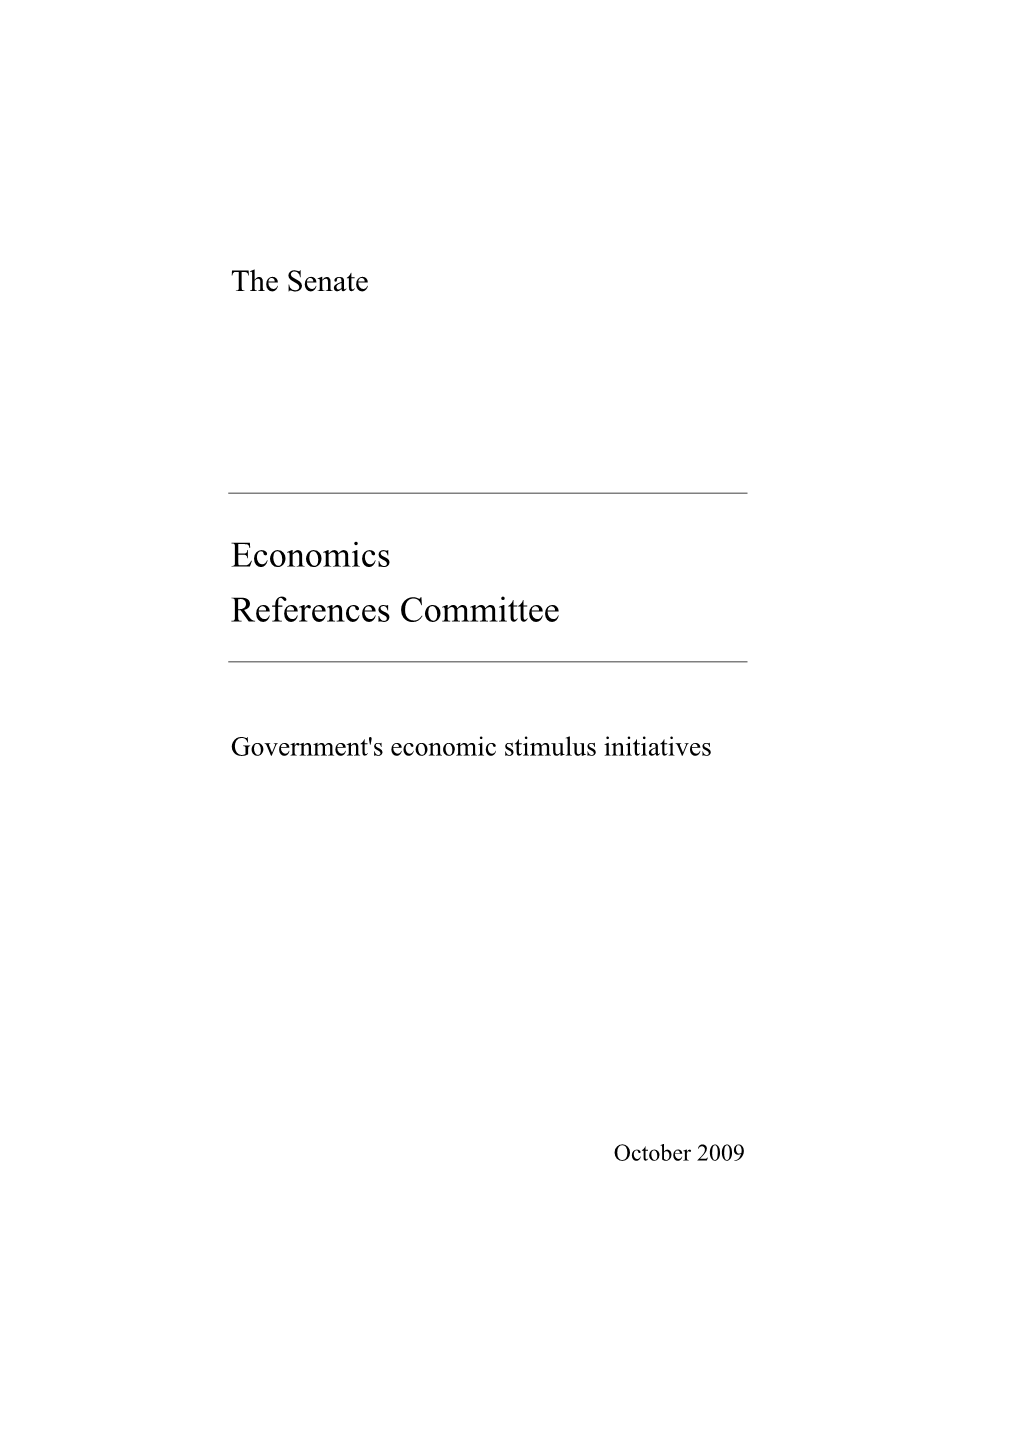 Report: Government's Economic Stimulus Initiatives